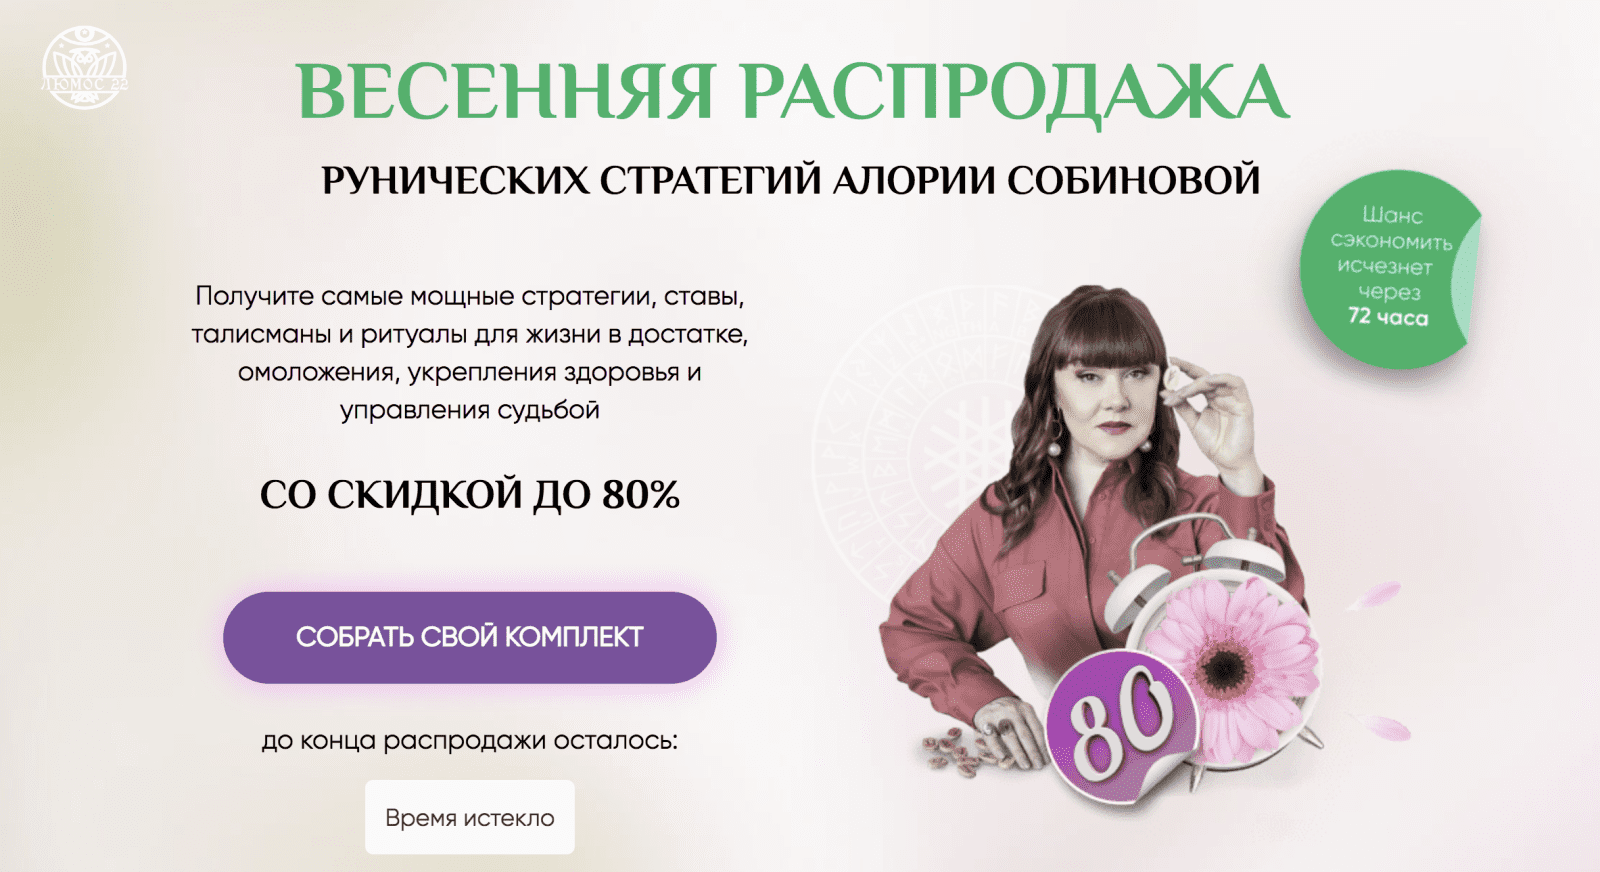 Изображение [Люмос 22] Алория Собинова - Денежный рунический талисман вариант VIP (2021) в посте 248483